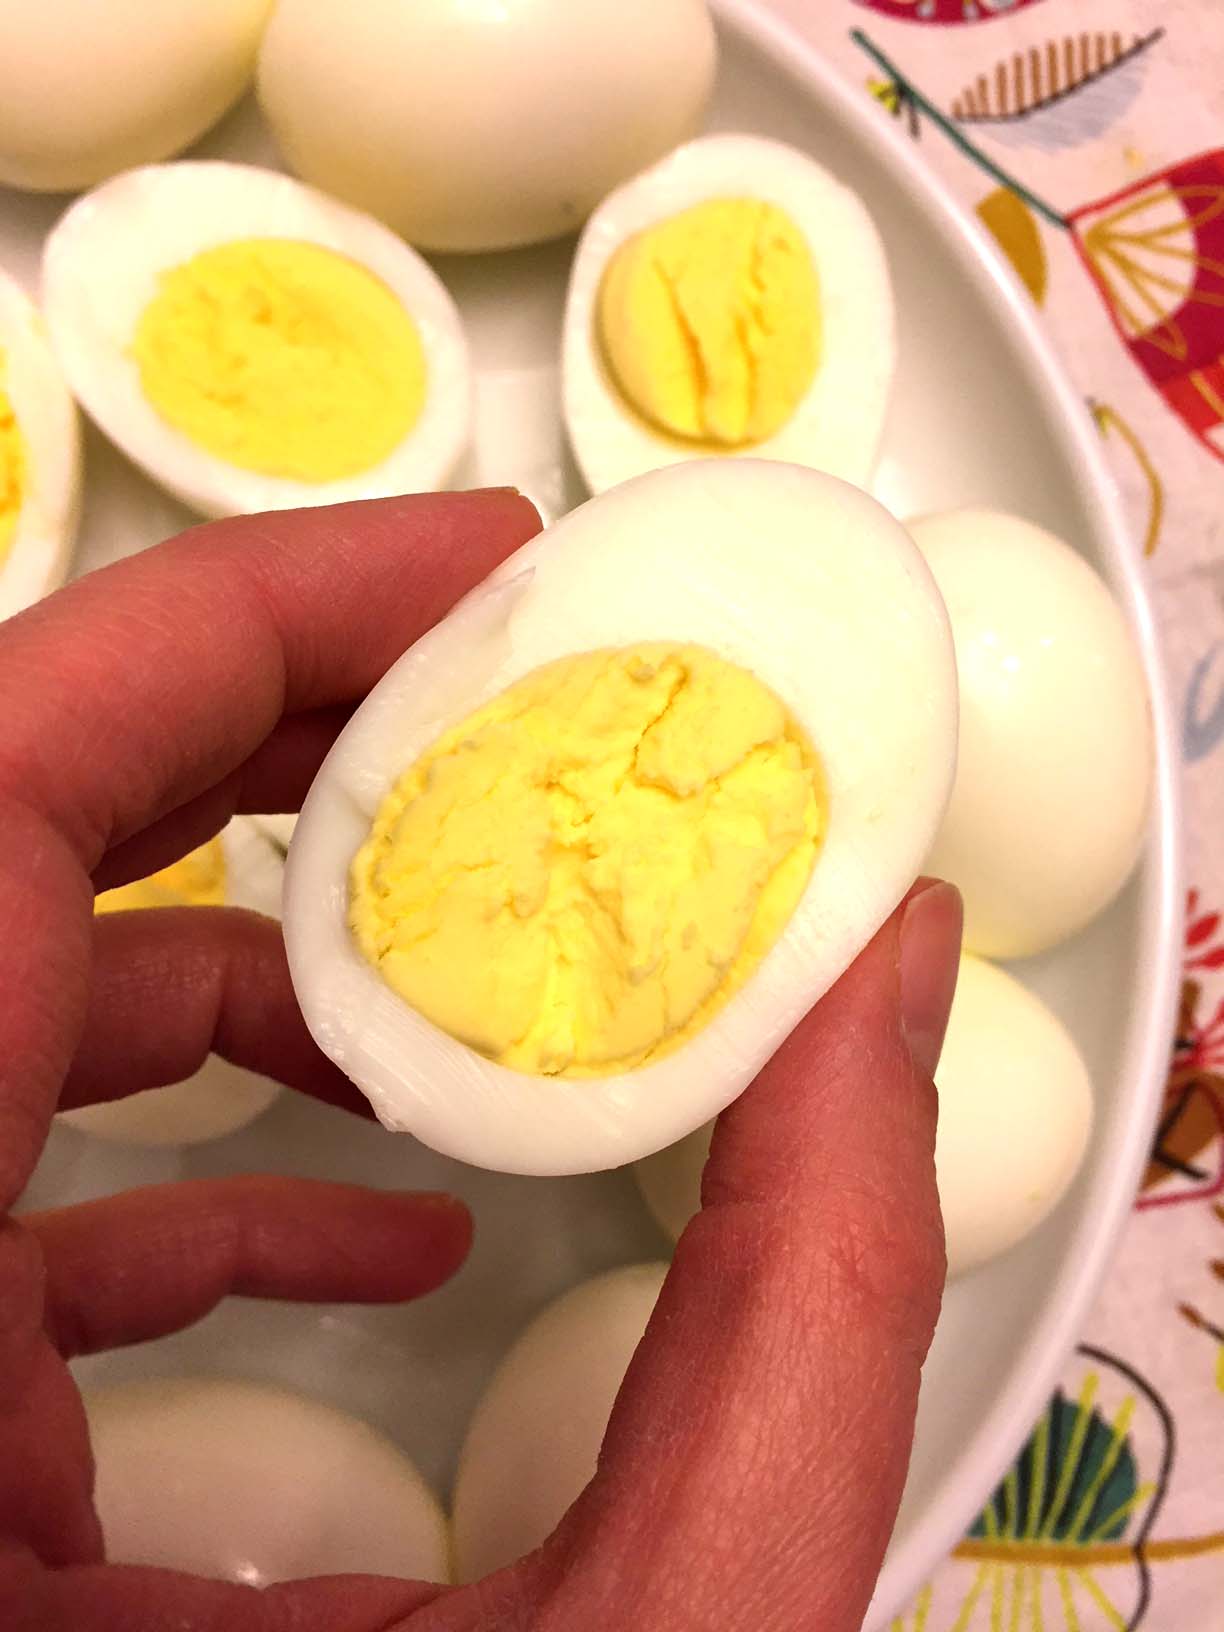 https://www.melaniecooks.com/wp-content/uploads/2018/02/instant_pot_hard_boiled_eggs.jpg